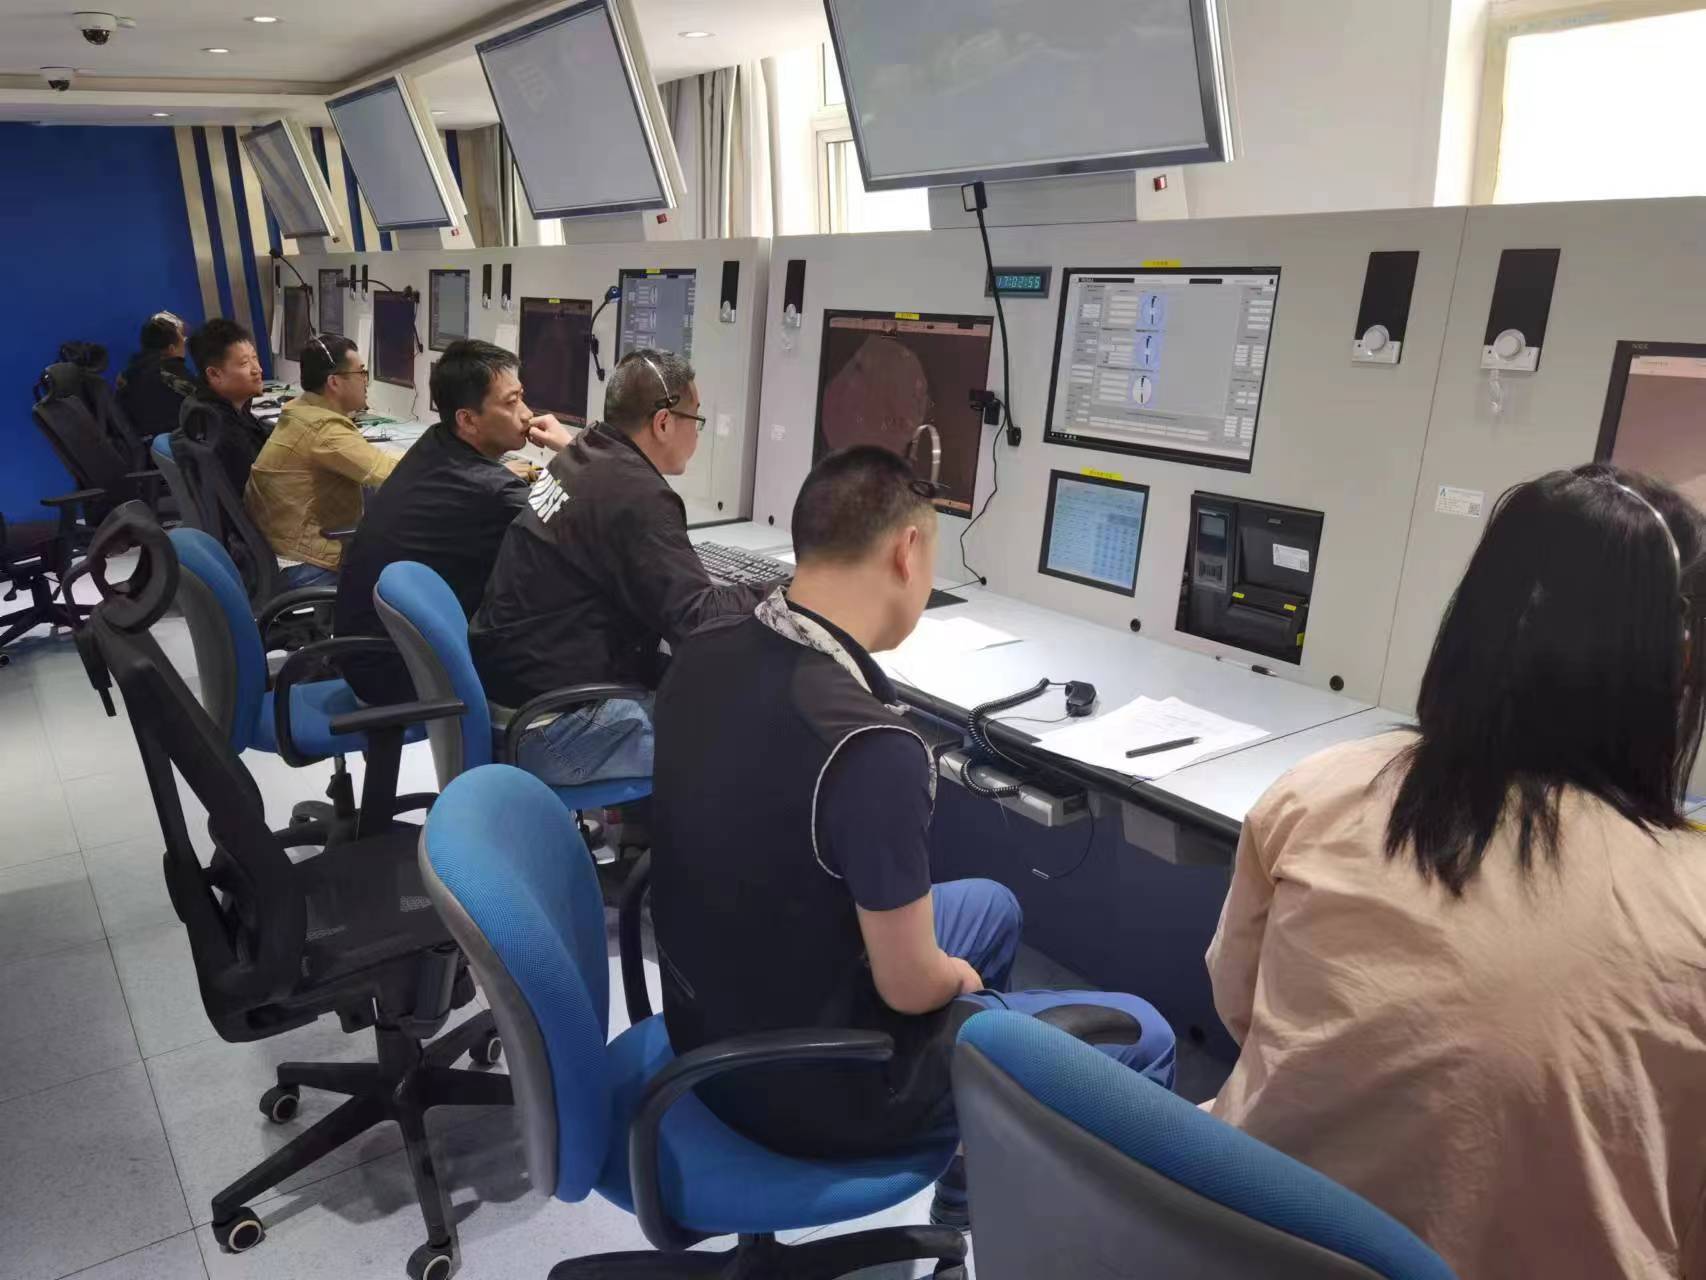 民航甘肃空管分局管制运行部区域三室开展特情处置培训